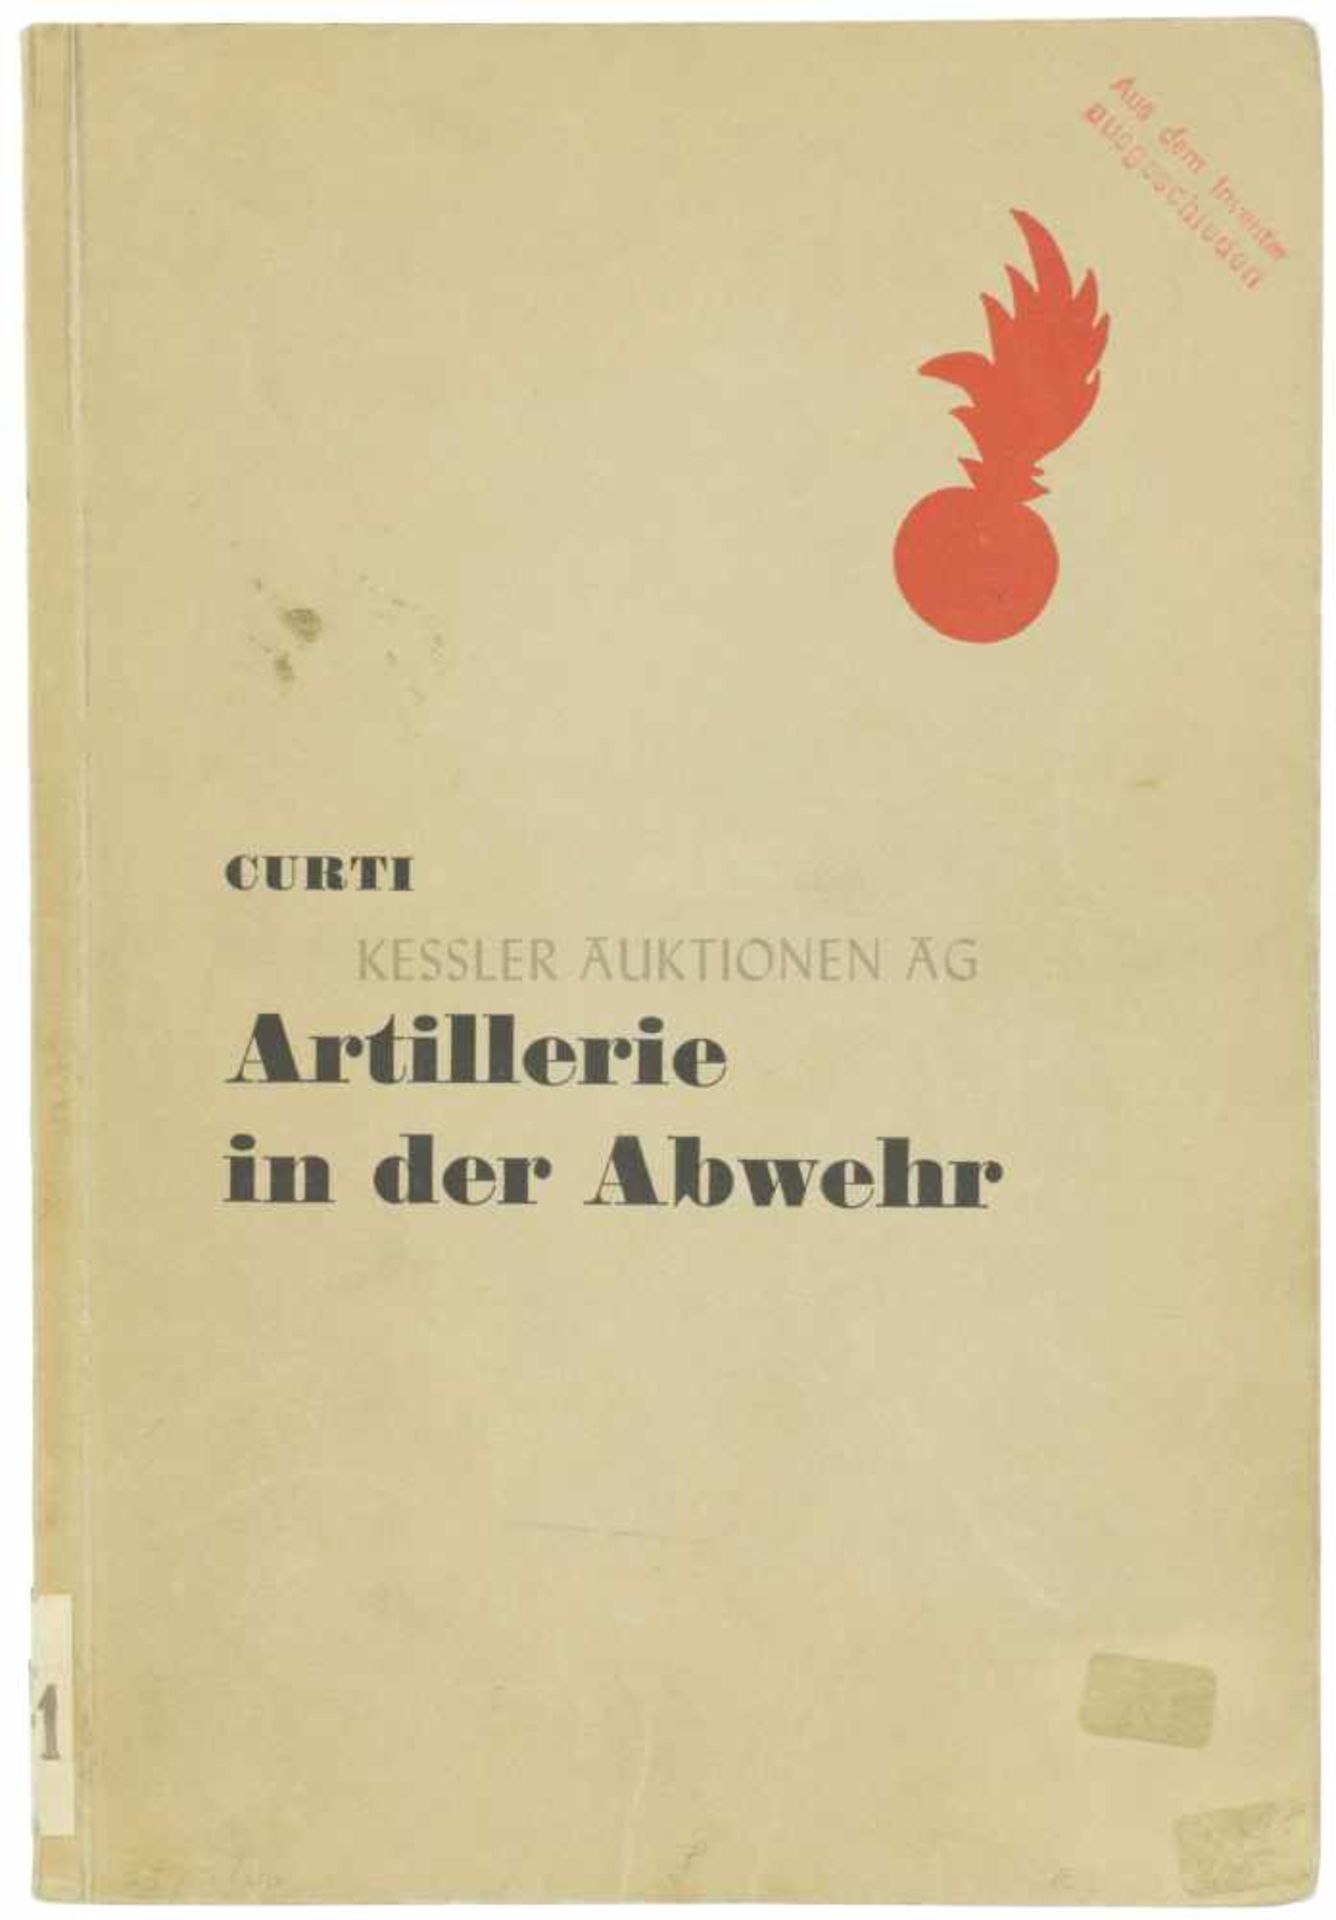 Artillerie in der Abwehr Autor P. Curti, Verlag von Huber & Co., Frauenfeld und Leipzig, 1940, 202